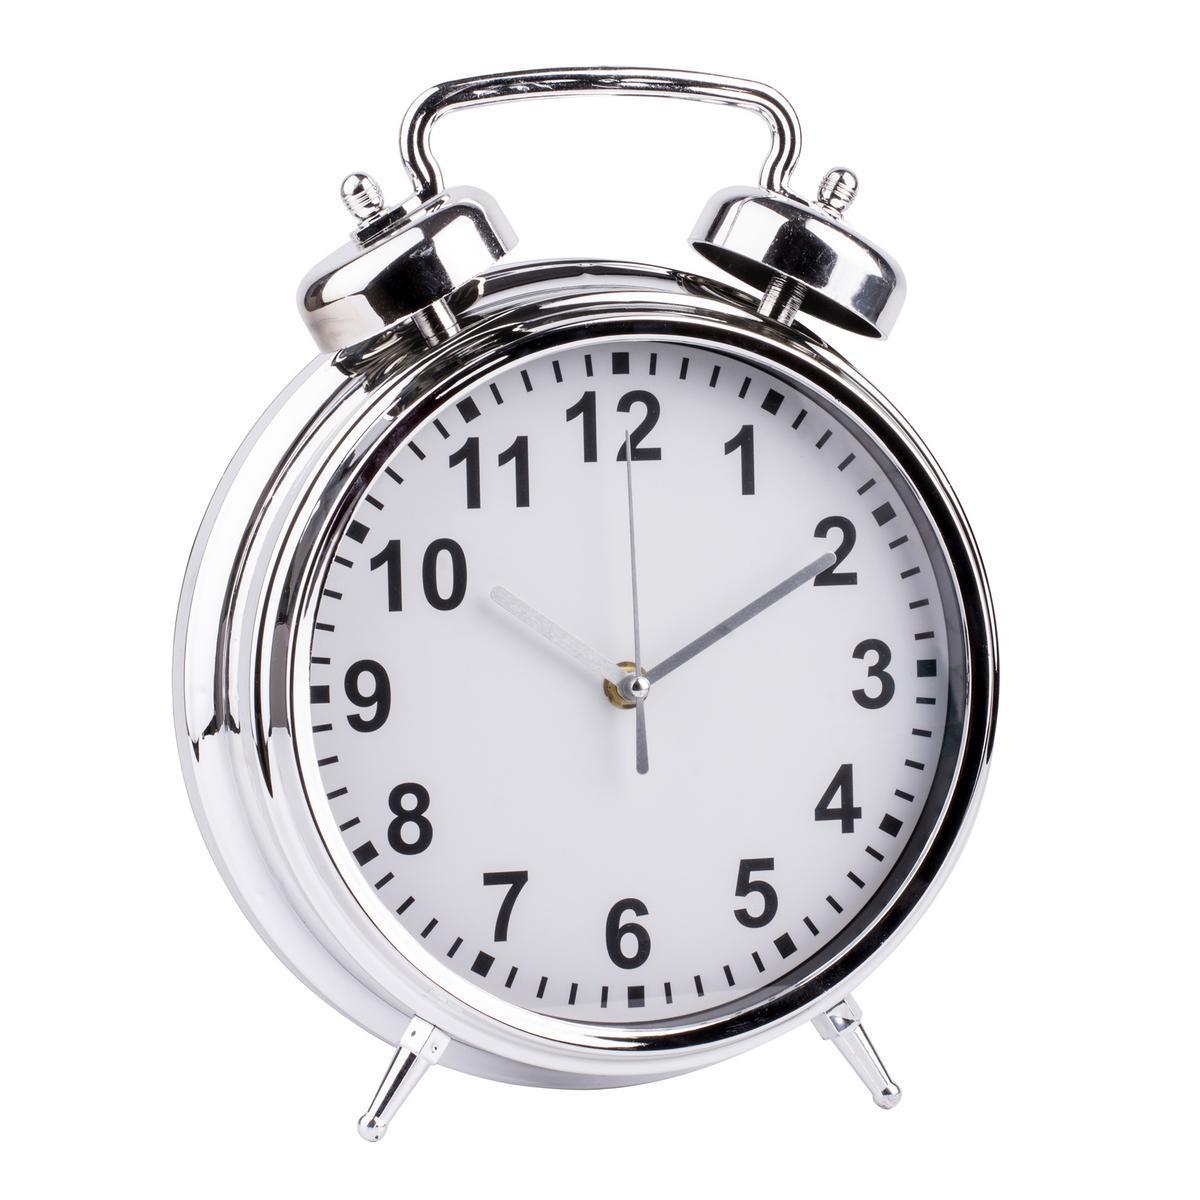 Horloge sur pied - Plastique finition chromé - 24,5 x 7 x H 31,5 cm - Gris et blanc